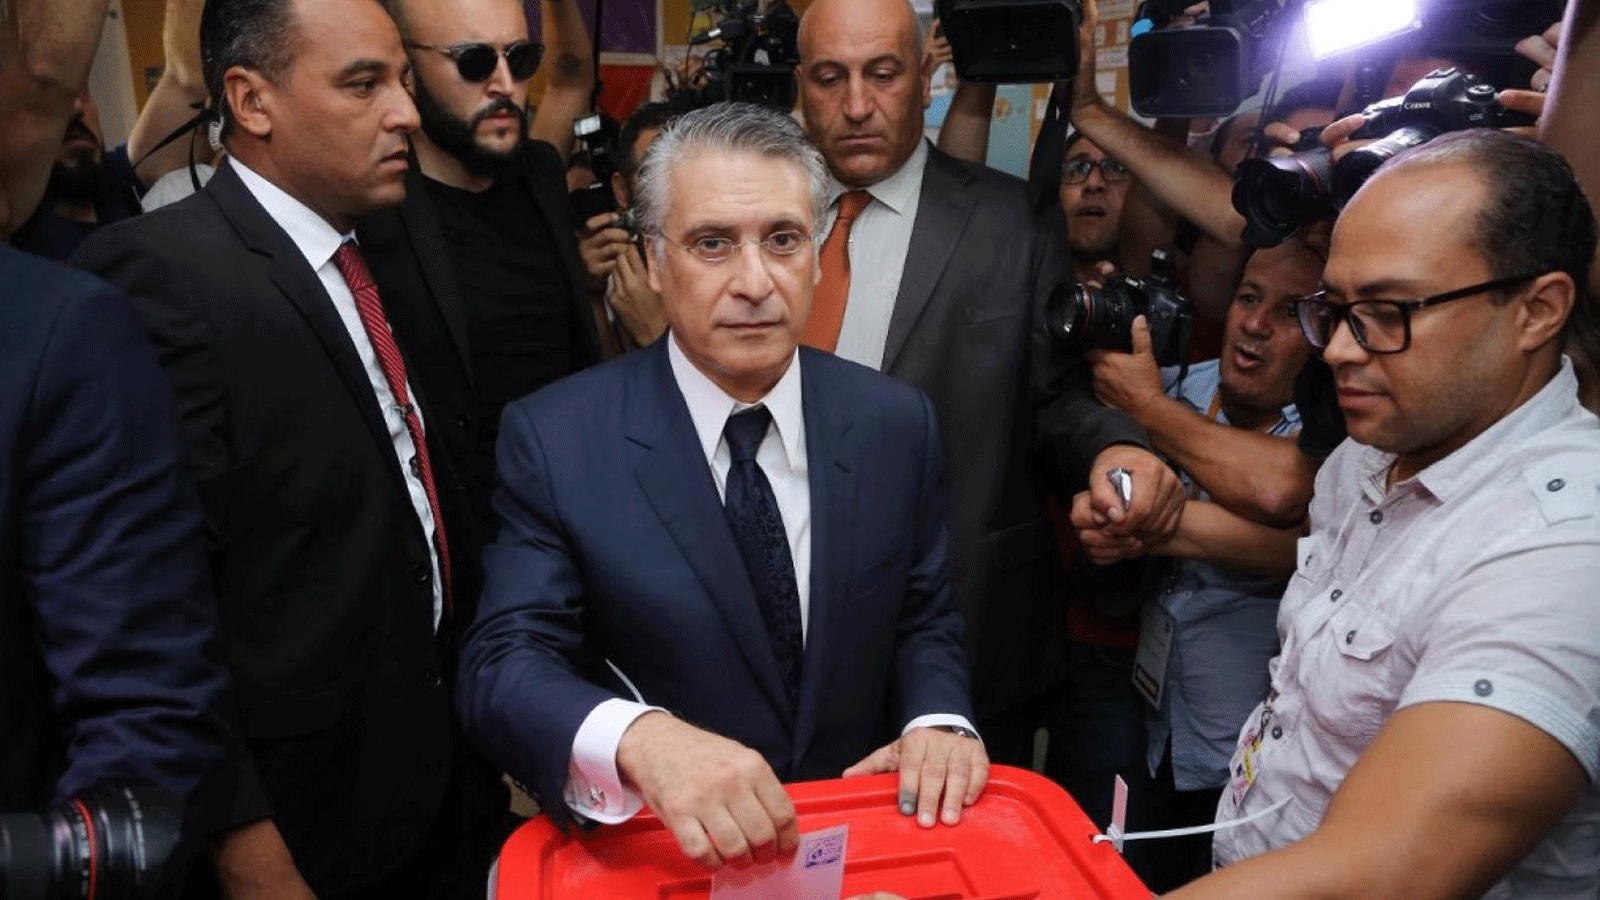 نبيل القروي يُدلي بصوته في مركز اقتراع بالعاصمة تونس في 13 أكتوبر / تشرين الأول 2019 عندما كان مرشحاً للرئاسة. 